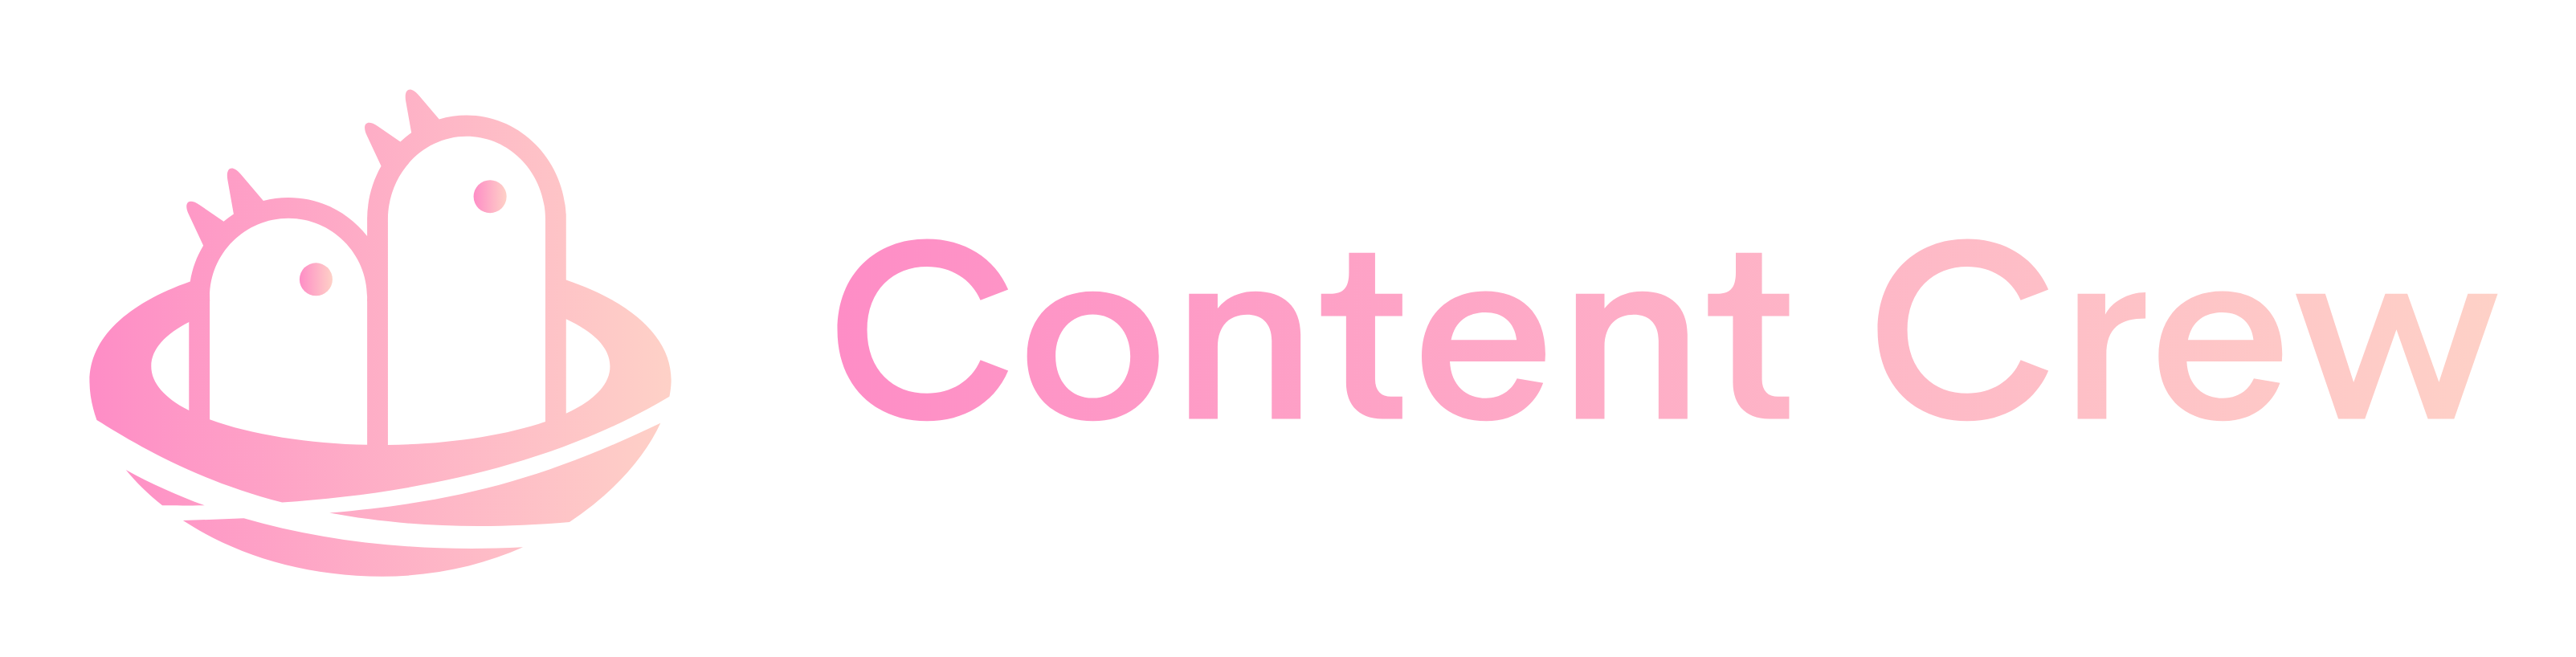 Content Crew - logo